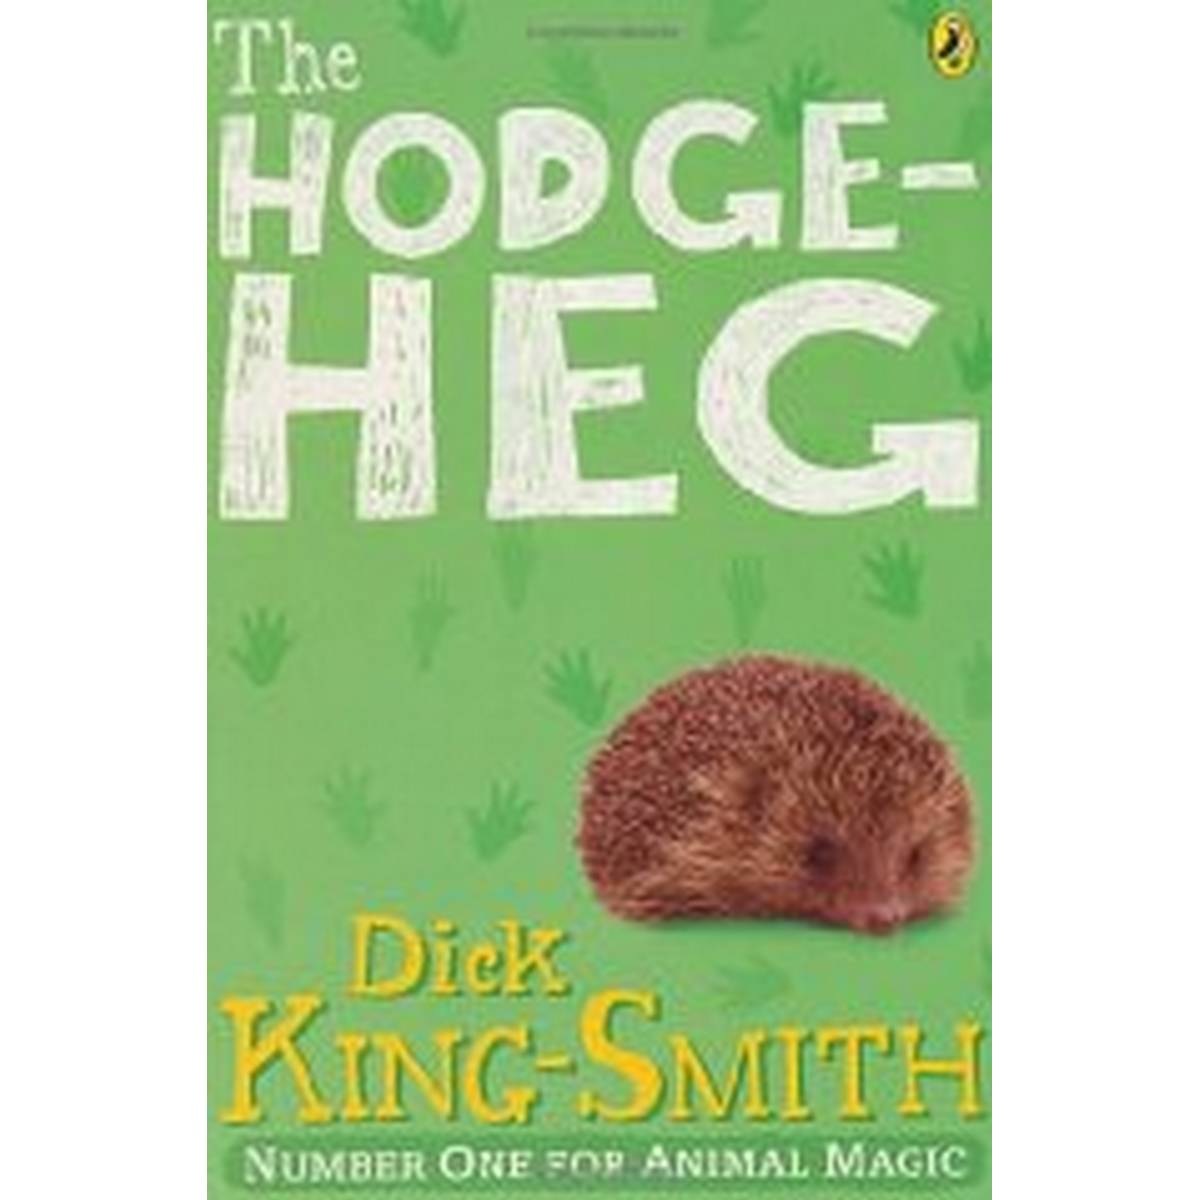 The Hodgeheg